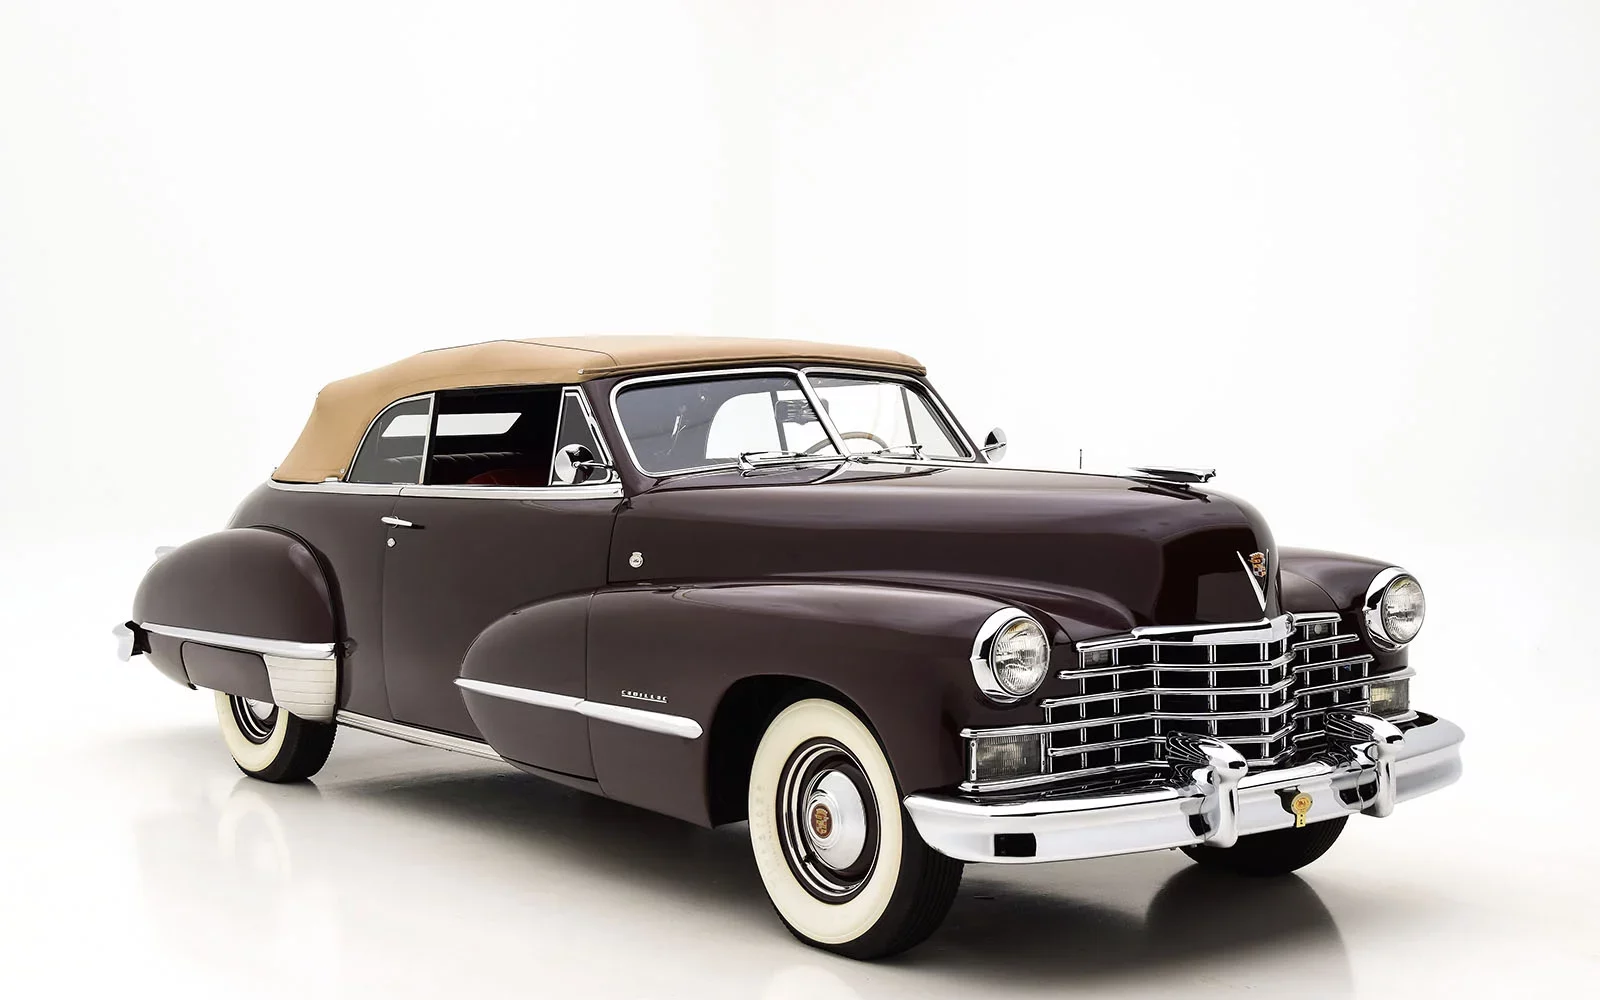 1946 Cadillac Series 62 Convertible Coupe, cadillac, Cadillac Series 62